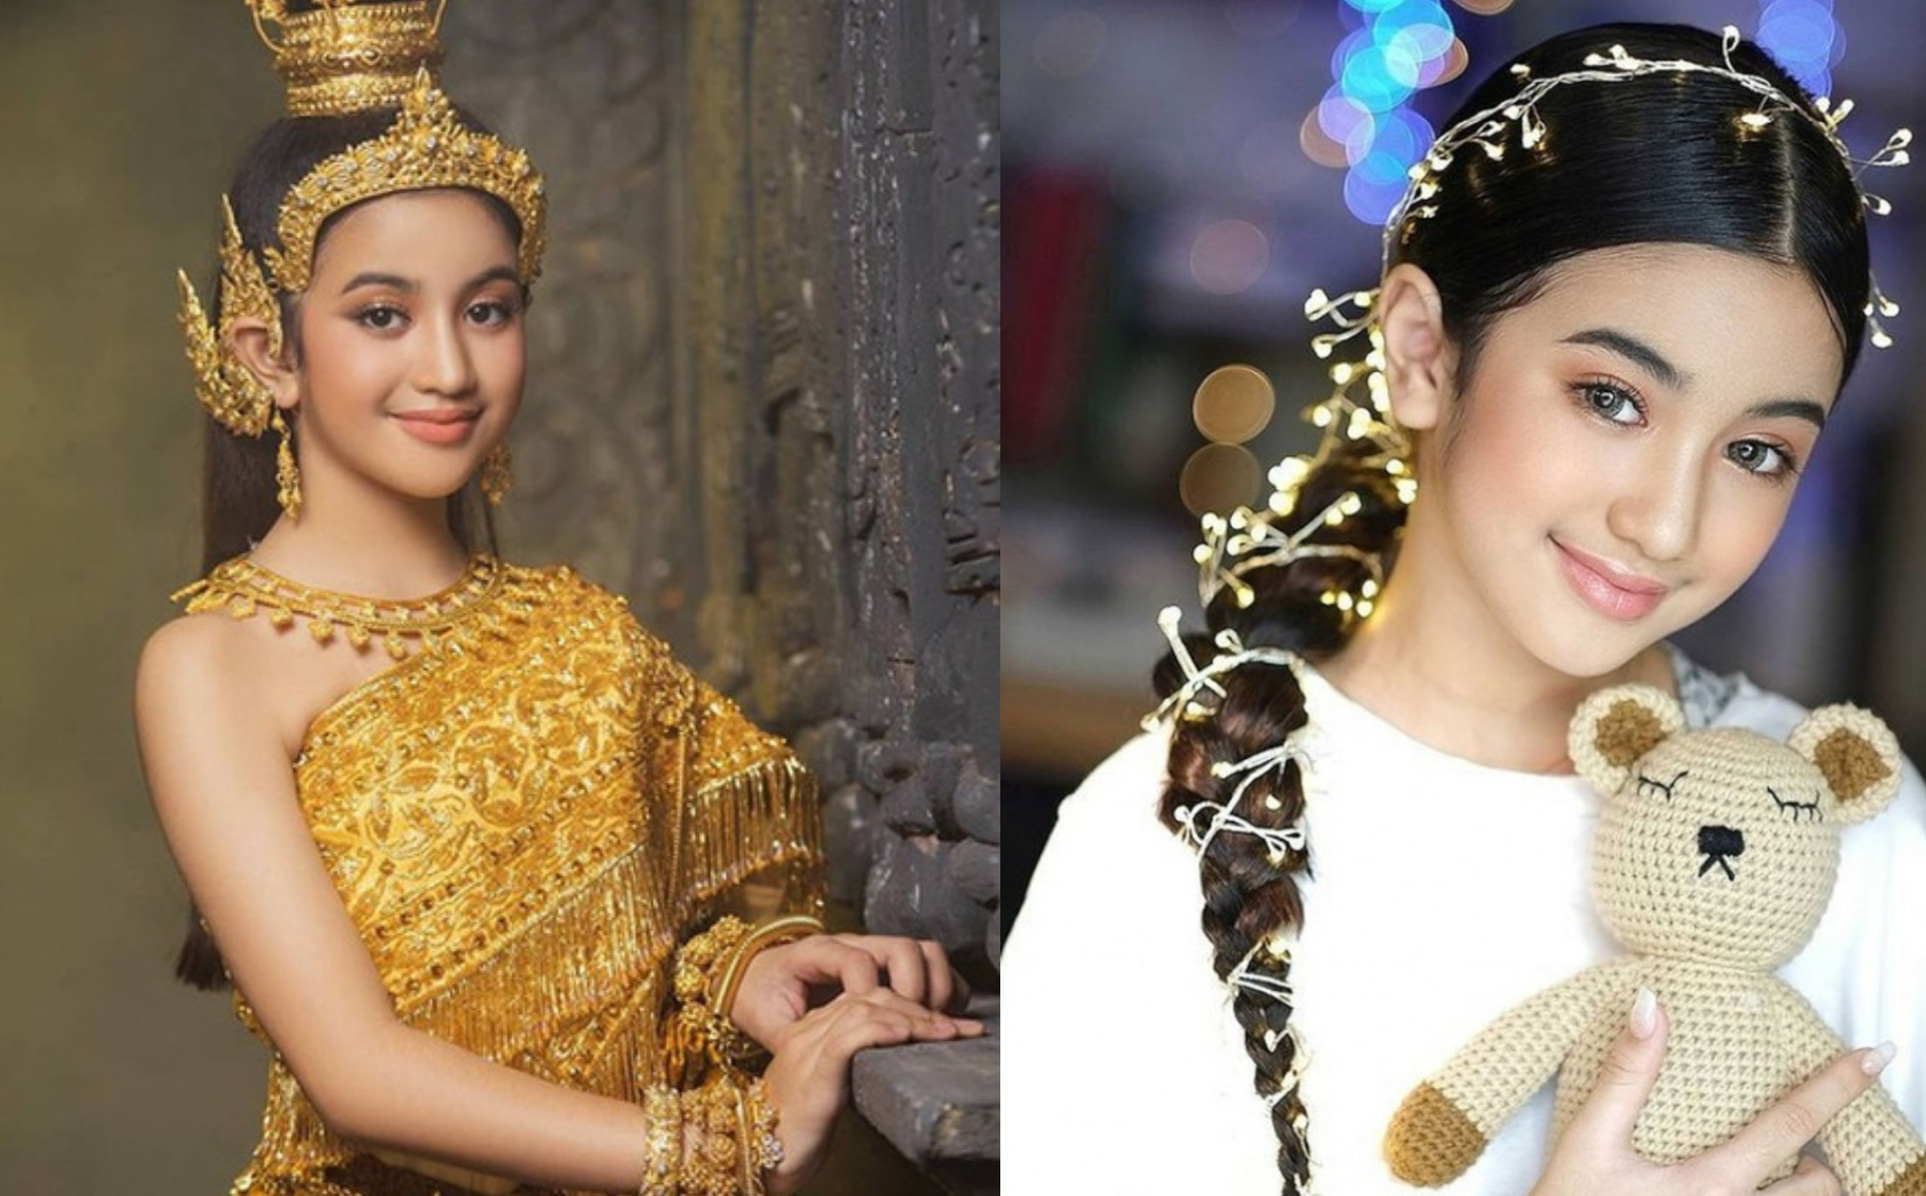 Tiểu công chúa Campuchia mới 10 tuổi đã lộ rõ nét đẹp xứng tầm mỹ nhân - ảnh 1